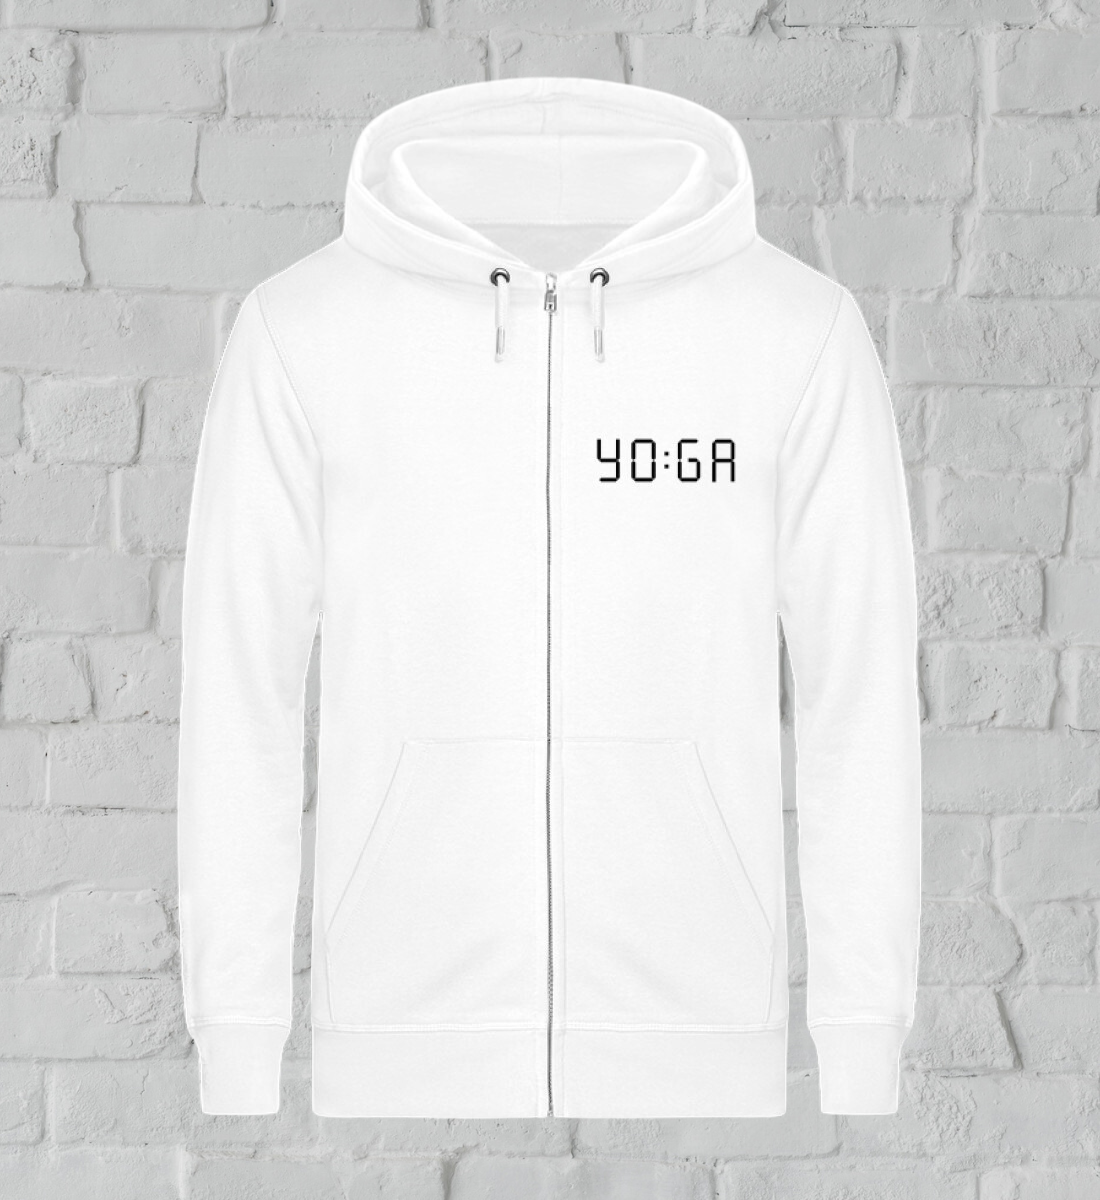 zeit für yoga l yoga sweatshirtjacke weiß l bio sweatshirtjacke l bio yoga kleidung l umweltfreundliche und vegane mode online shoppen